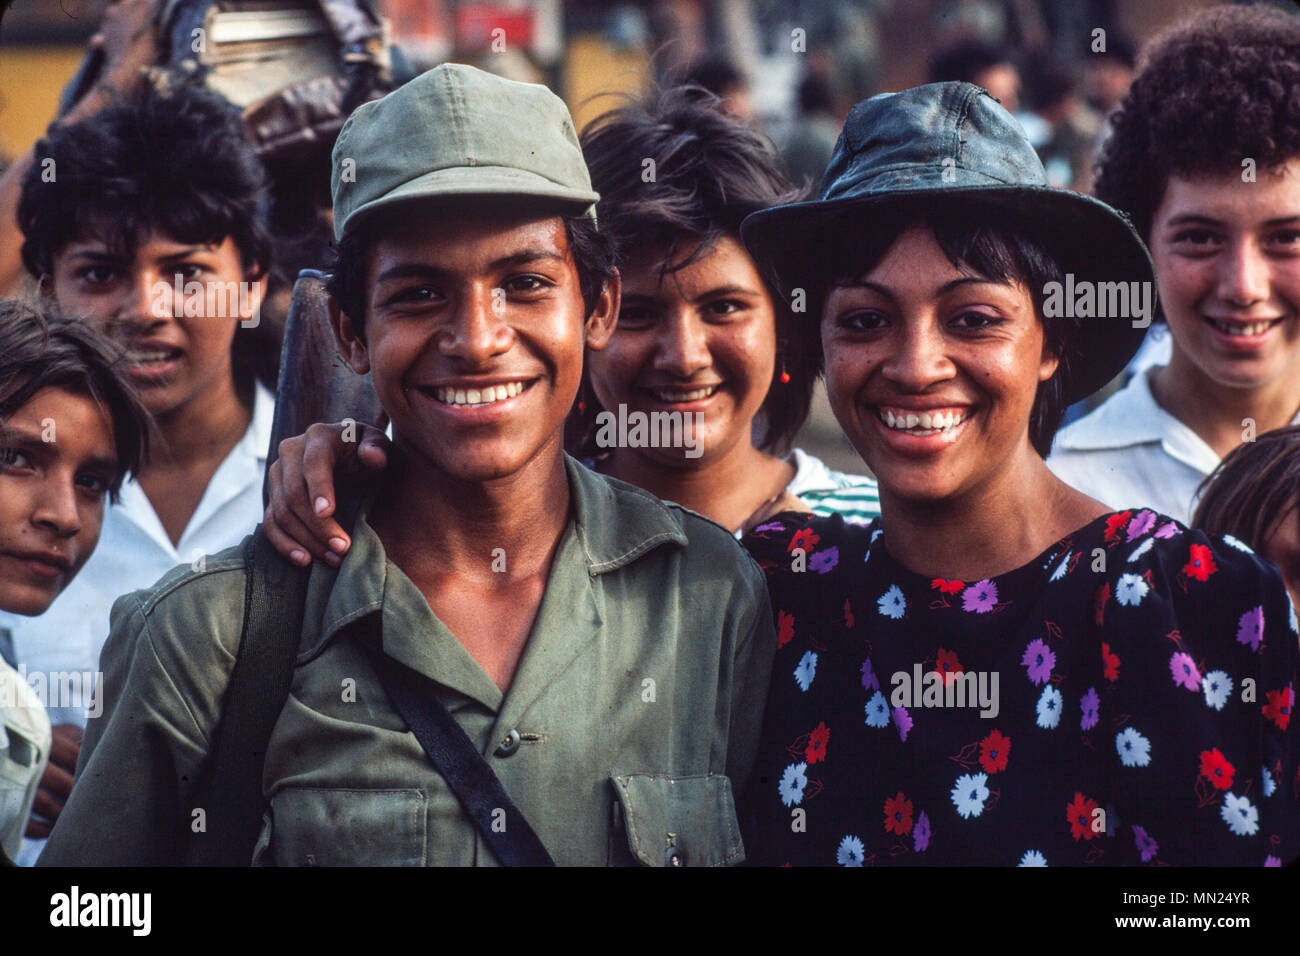 Jeune soldat sandiniste est avec petite amie, Managua, juin 1986. Banque D'Images